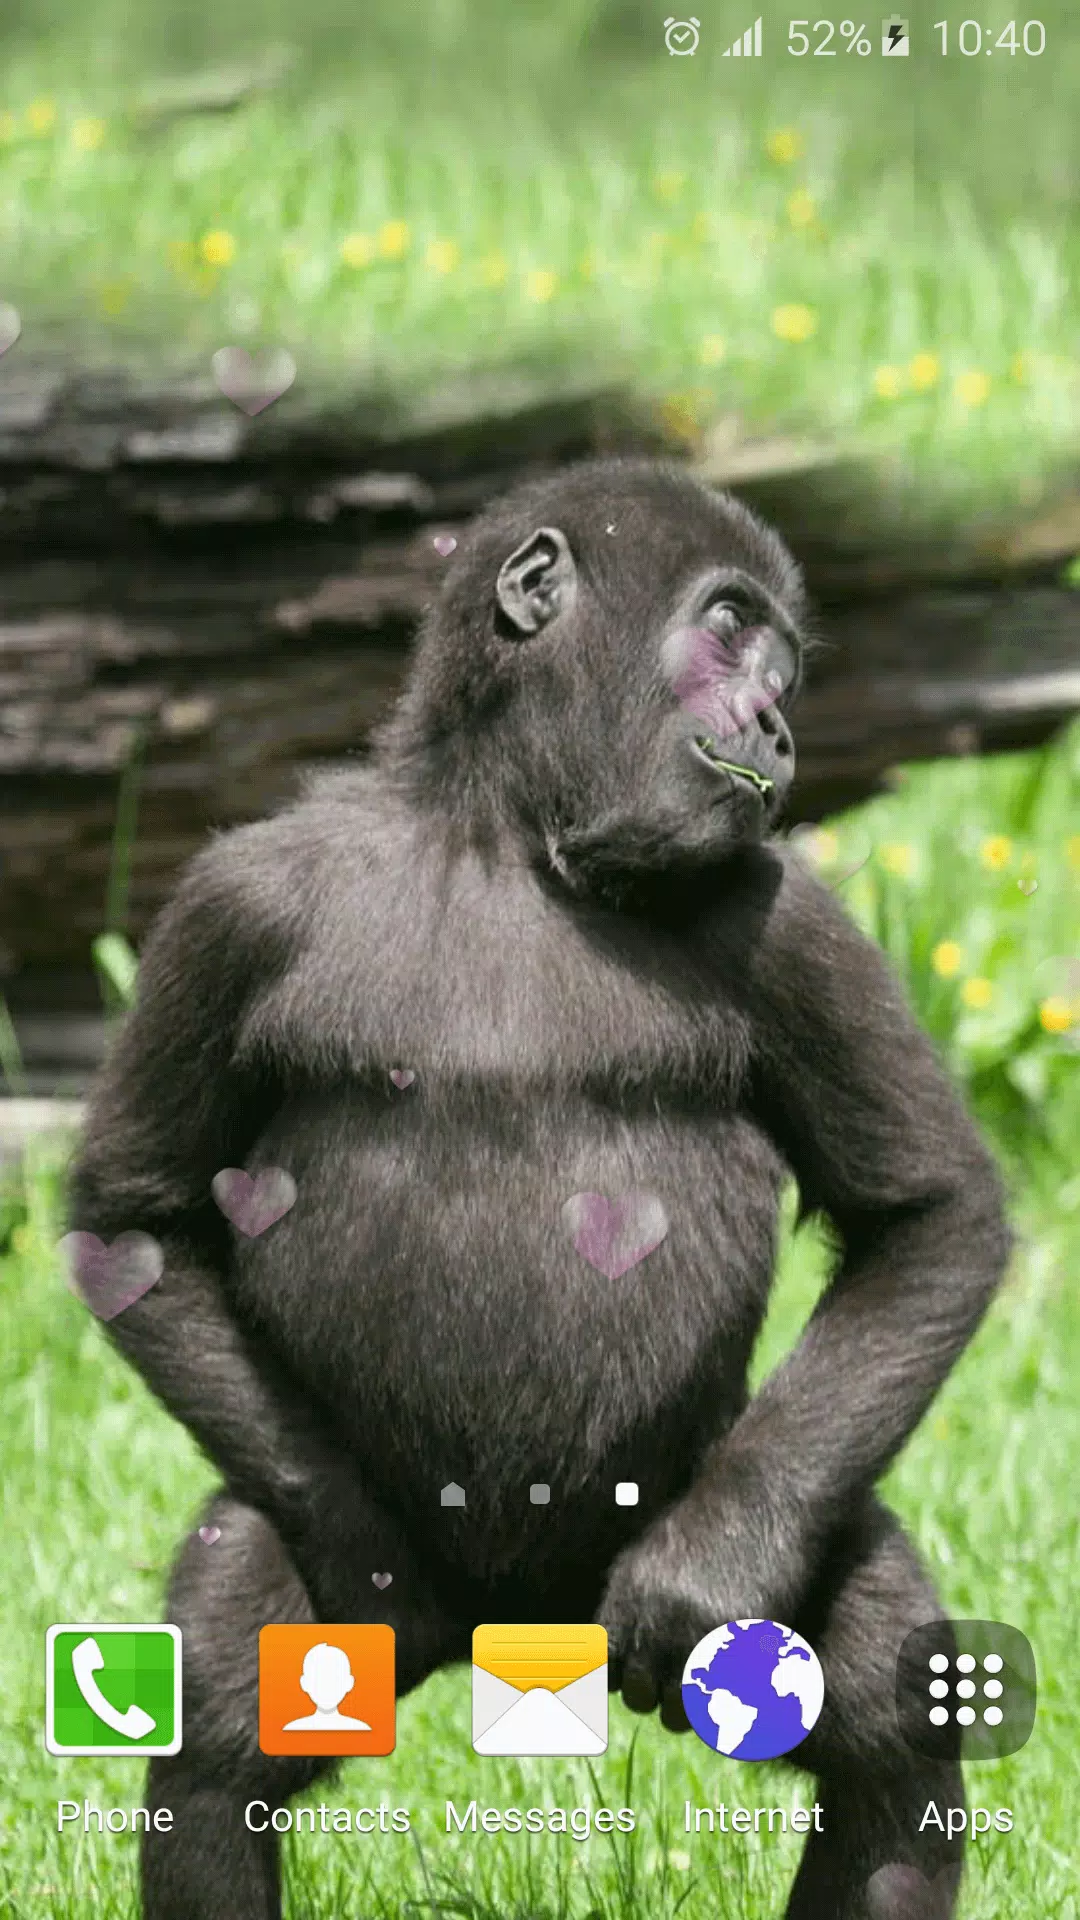 Fotos Macaco Engracado, 68.000+ fotos de arquivo grátis de alta